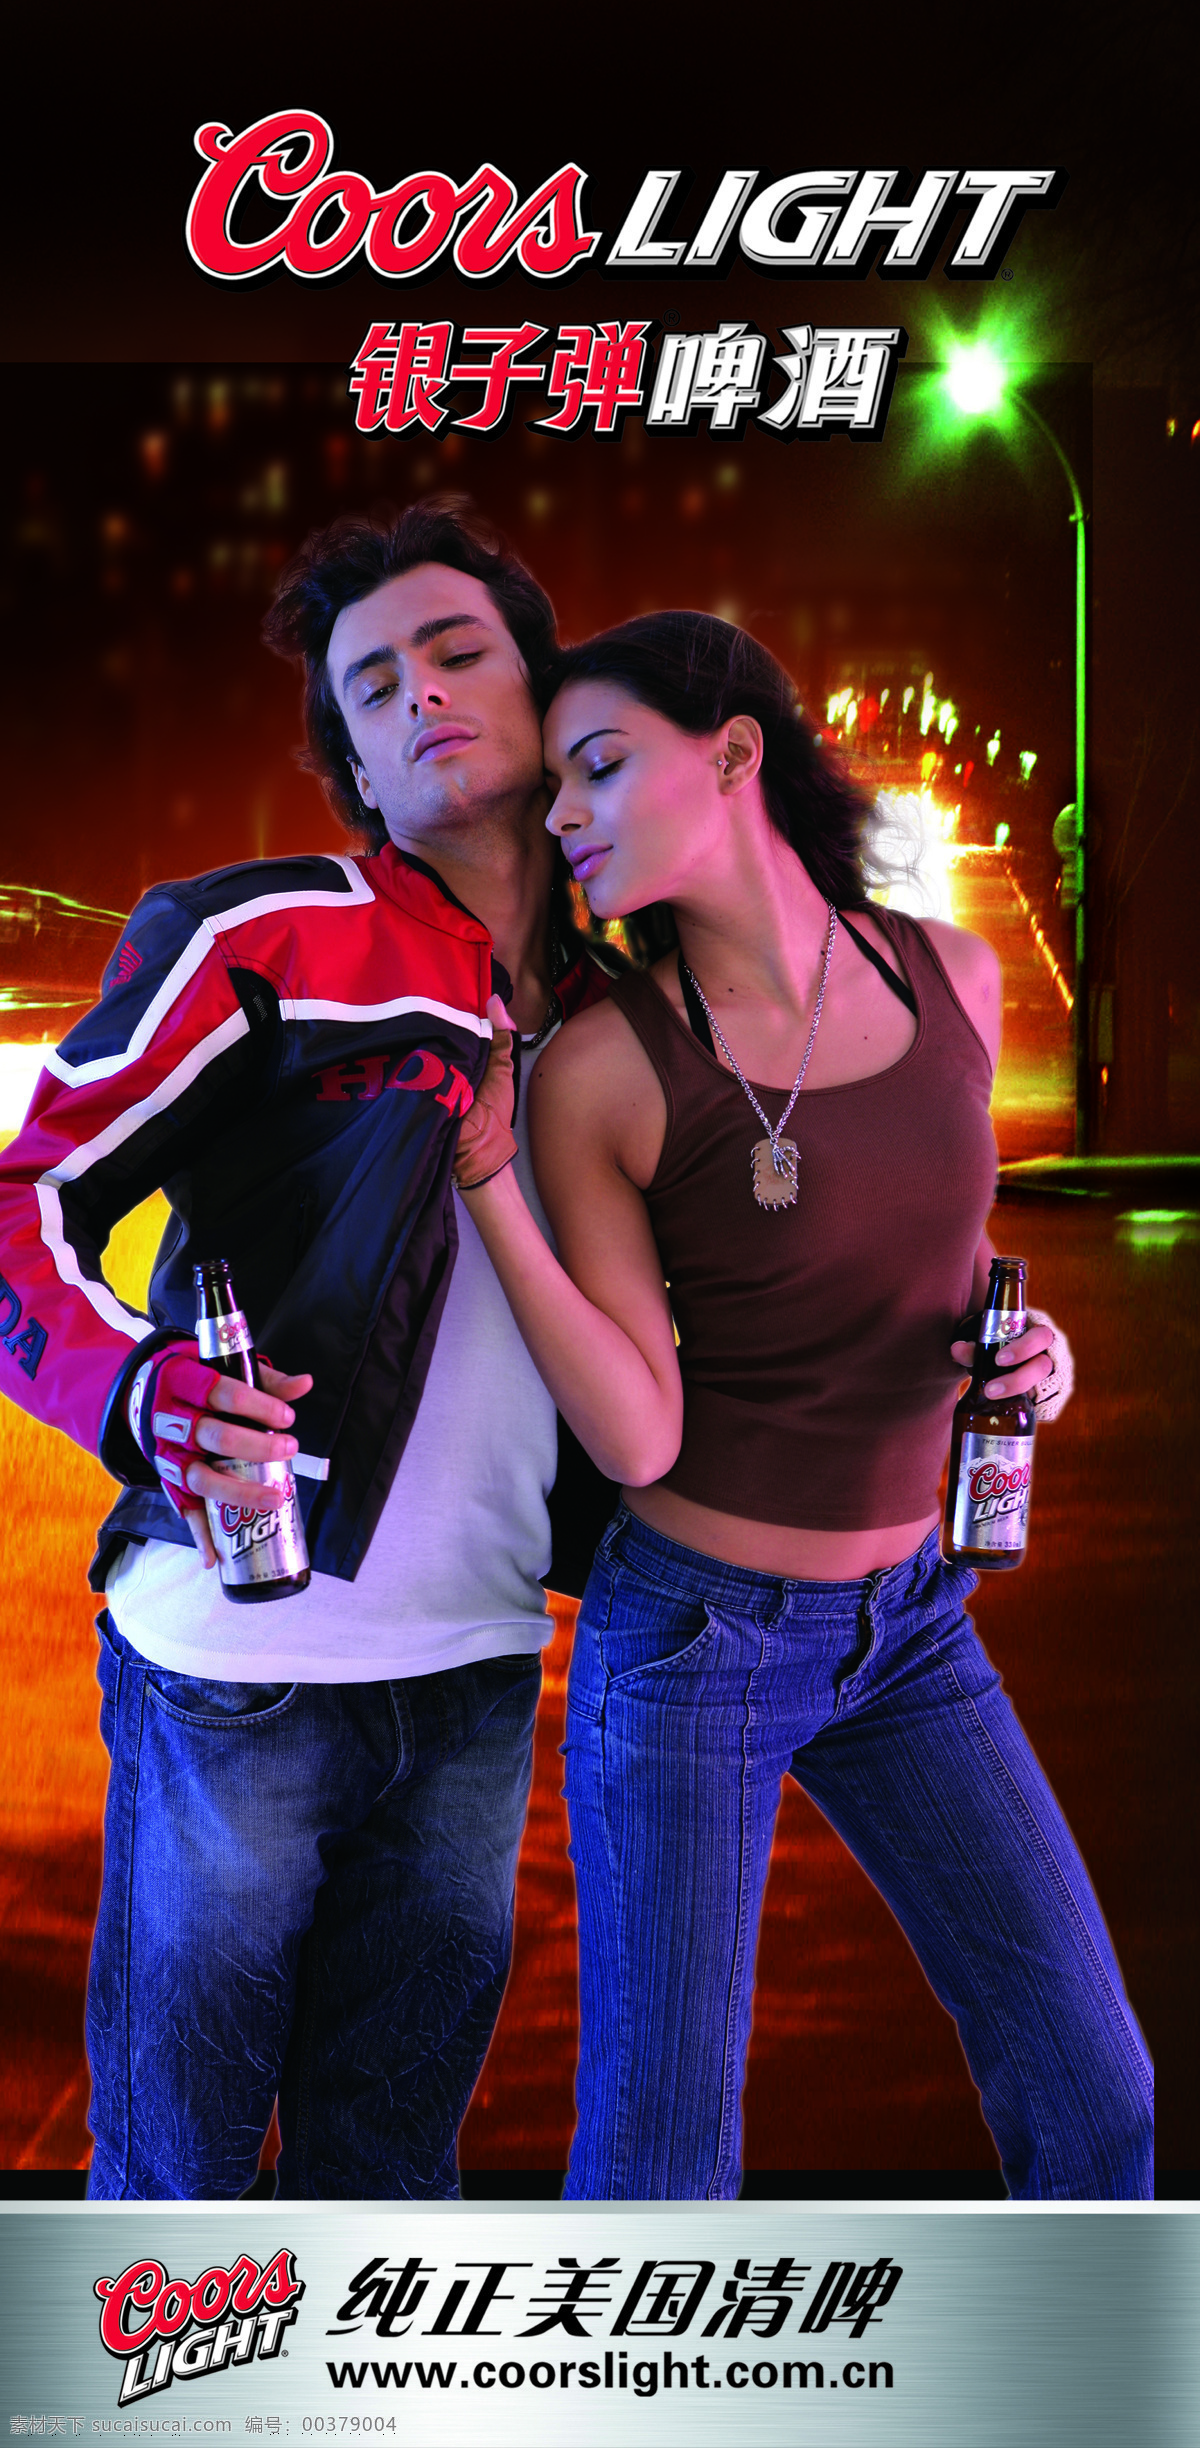 银子 弹 啤酒 广告 情侣 标志 路灯 夜色背景 设计素材 烟酒专辑 平面创意 平面设计 青色 天蓝色